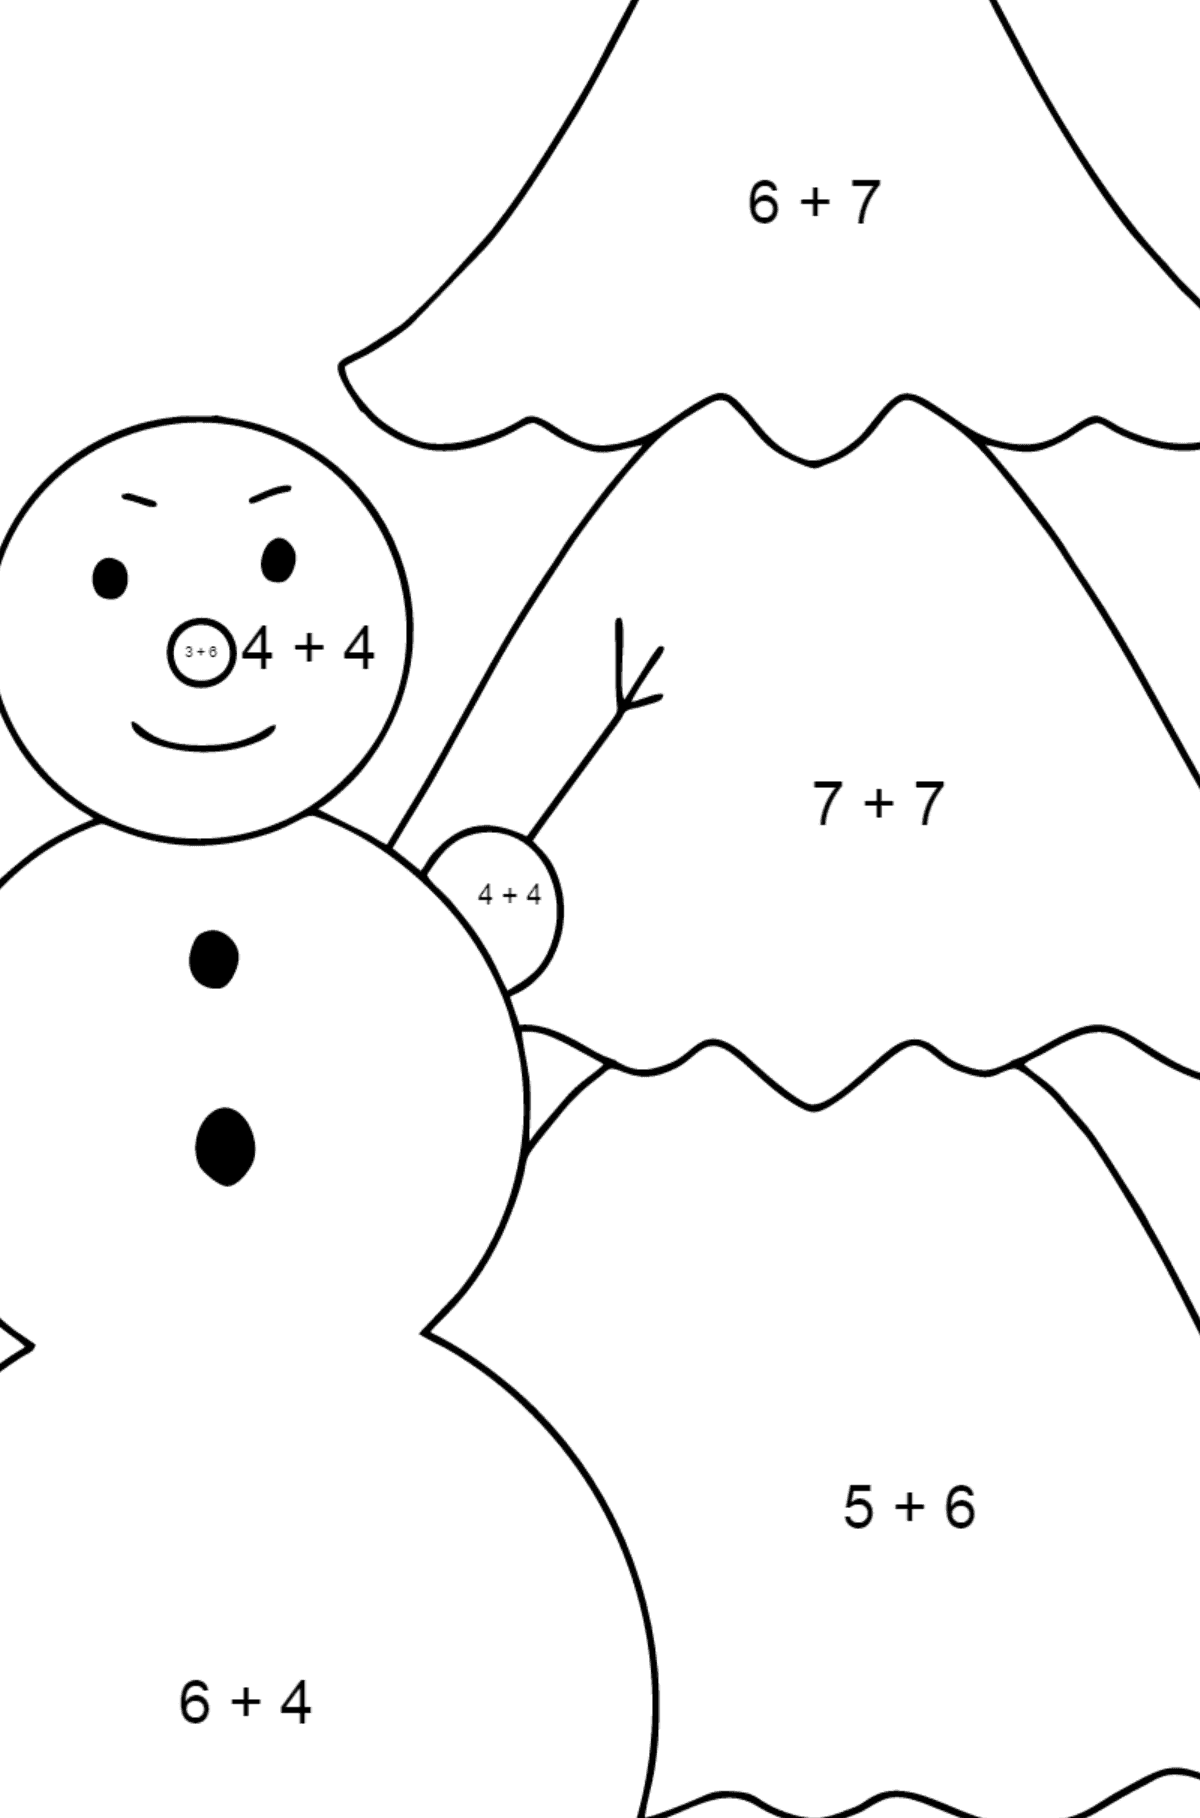 Ausmalbild: Schneemann und Weihnachtsbaum - Mathe Ausmalbilder - Addition für Kinder